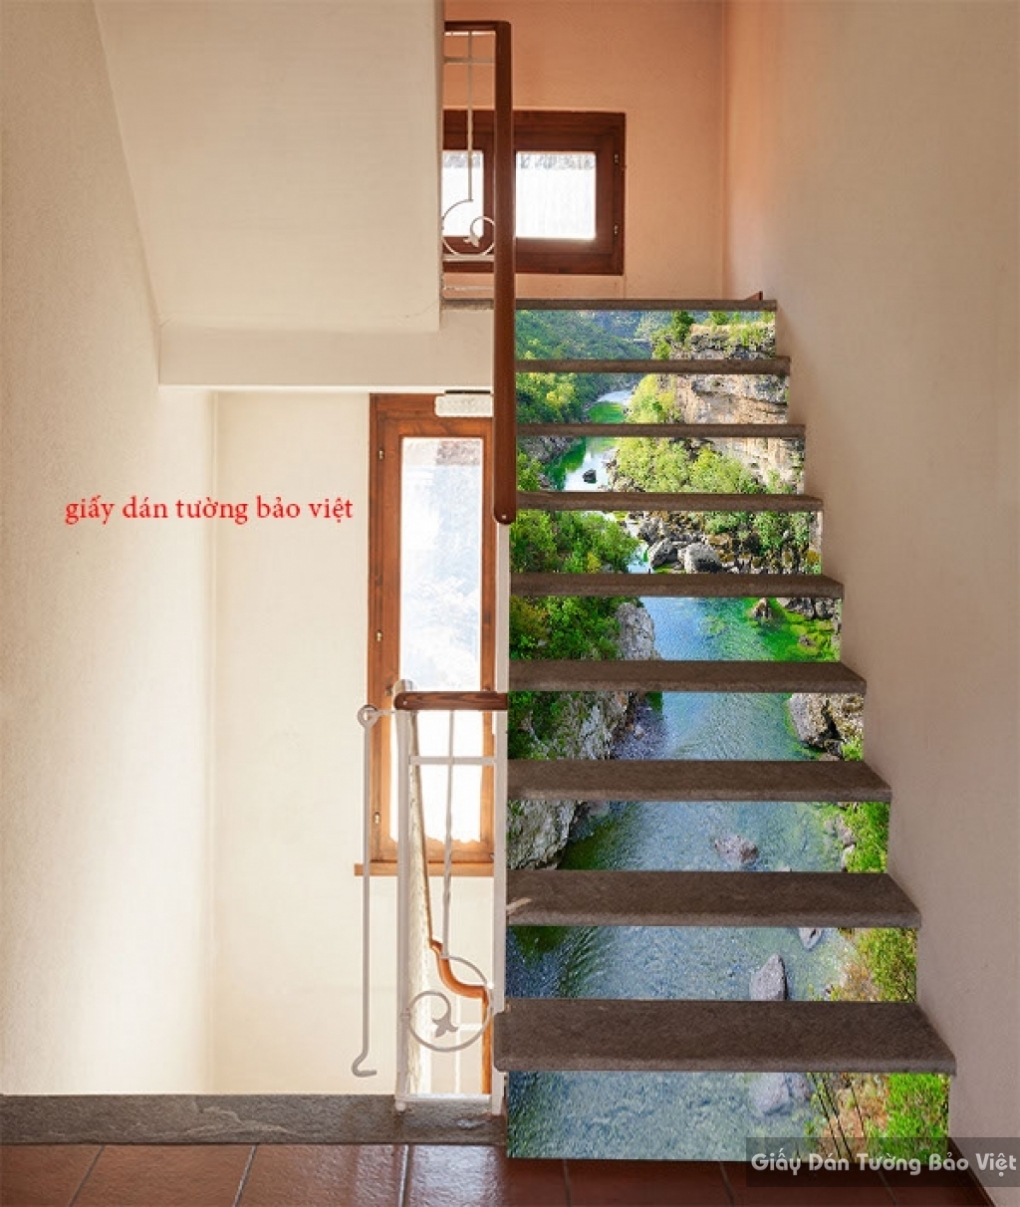 Tranh dán bậc cầu thang là giải pháp kinh tế và đơn giản để cải thiện vẻ đẹp của căn nhà. Với những mẫu trang trí đa dạng, bạn có thể dễ dàng lựa chọn phong cách phù hợp với không gian và sở thích của mình. Bảo vệ bậc cầu thang khỏi trầy xước và tạo điểm nhấn cho nội thất của bạn với tranh dán bậc cầu thang.